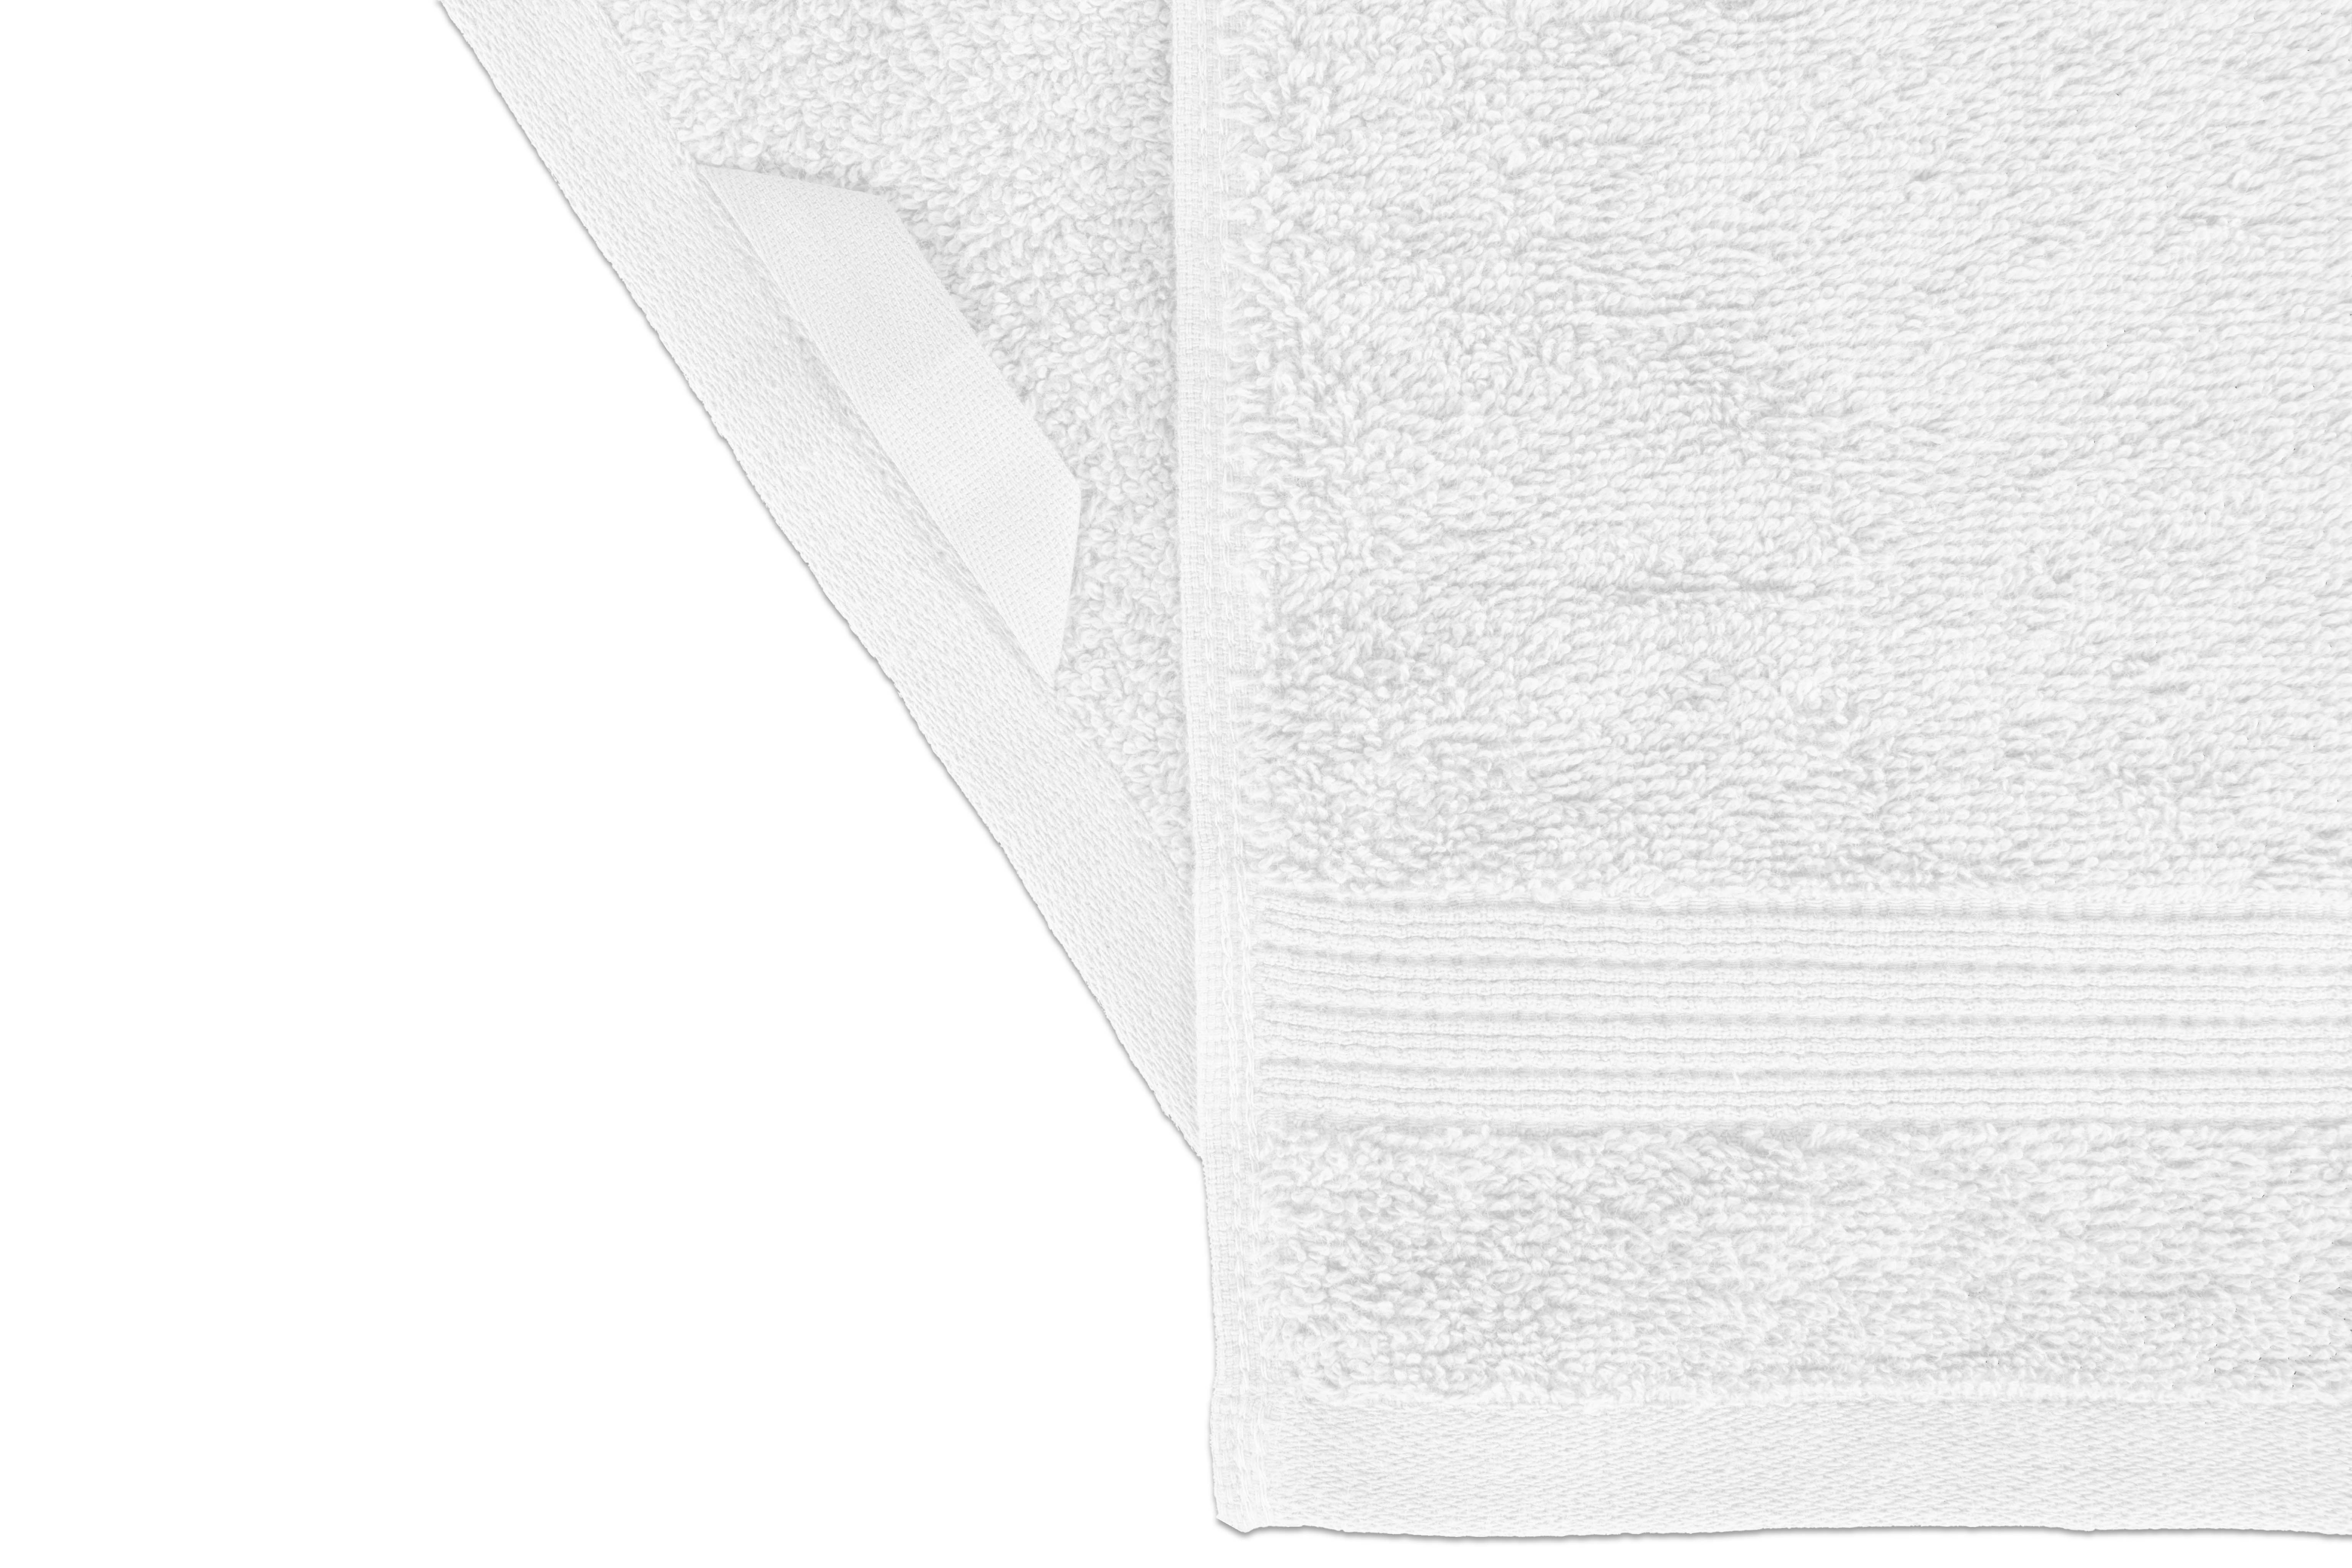 Hand towel EDEN 50x100cm, star white